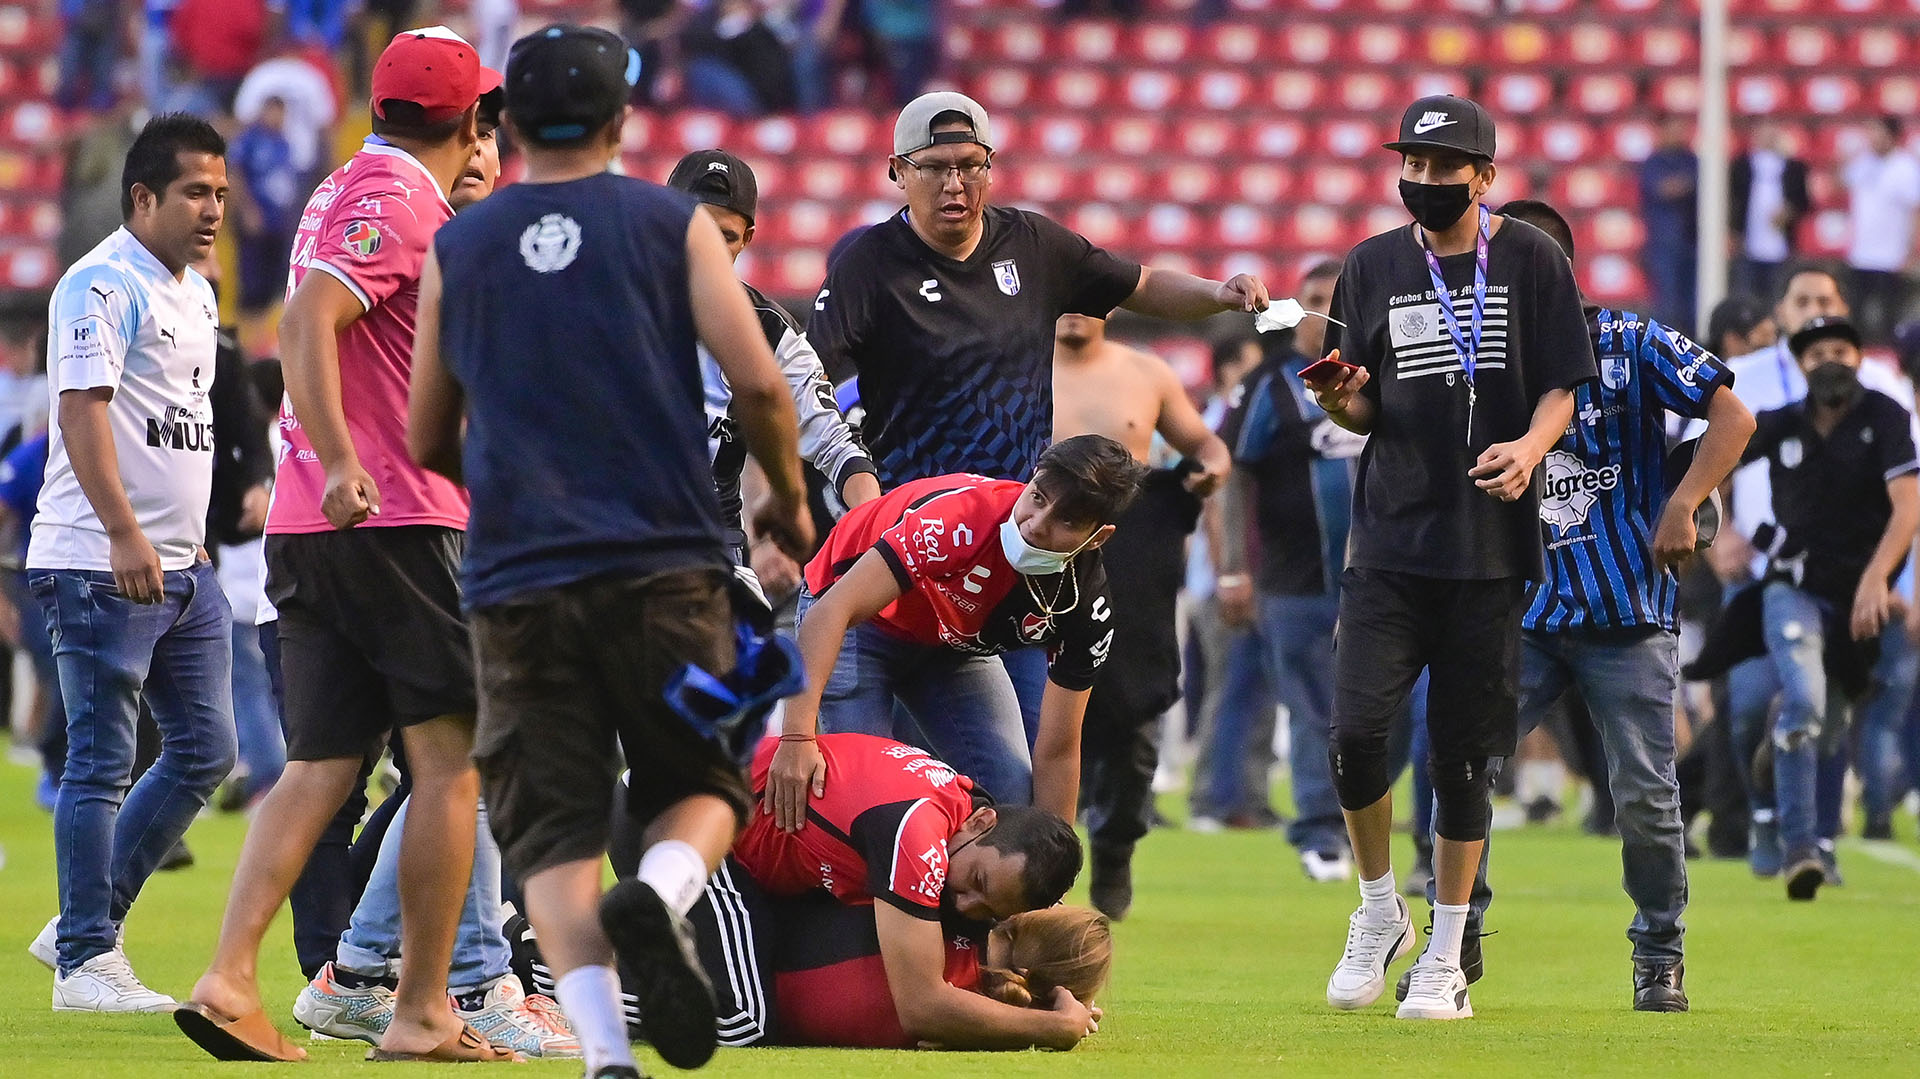 La implementación del Fan ID se aceleró a raíz de los sucesos violentos en el Estadio de la Corregidora en Querétaro (Foto: Sebastián Laureano Miranda/EFE)
